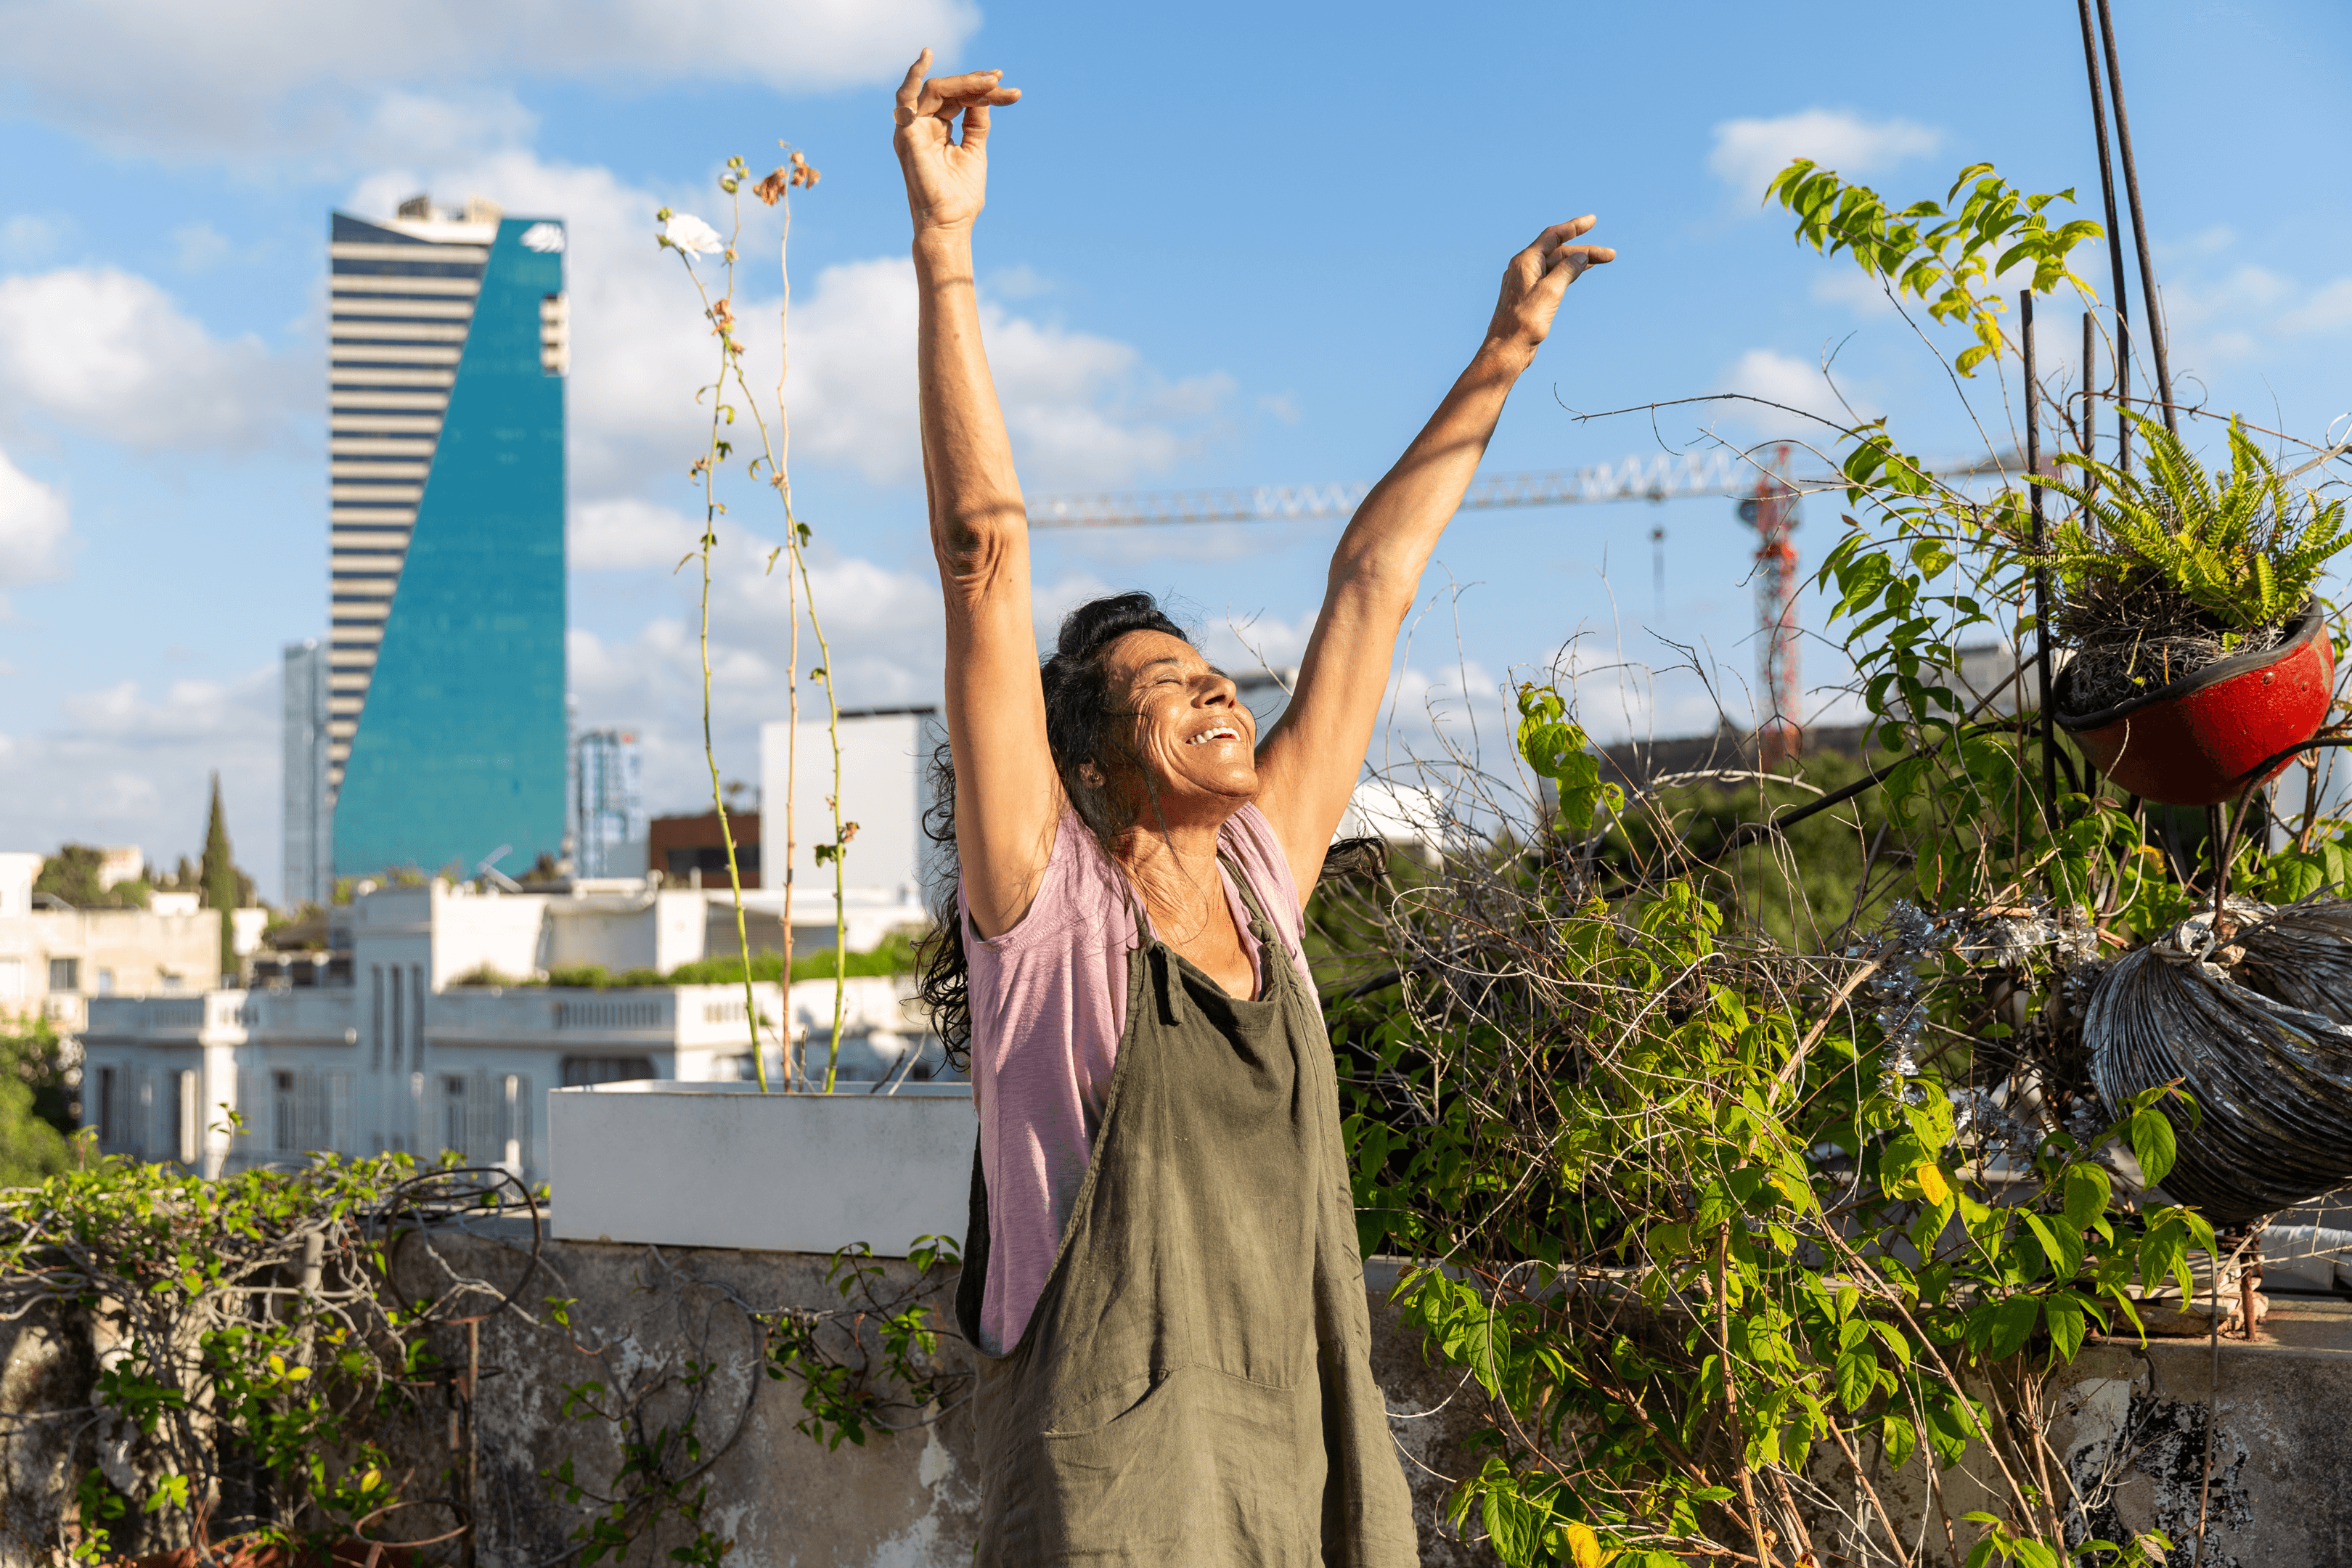 Dancers on Rooftops #120 - Orit (Israel, 2022)